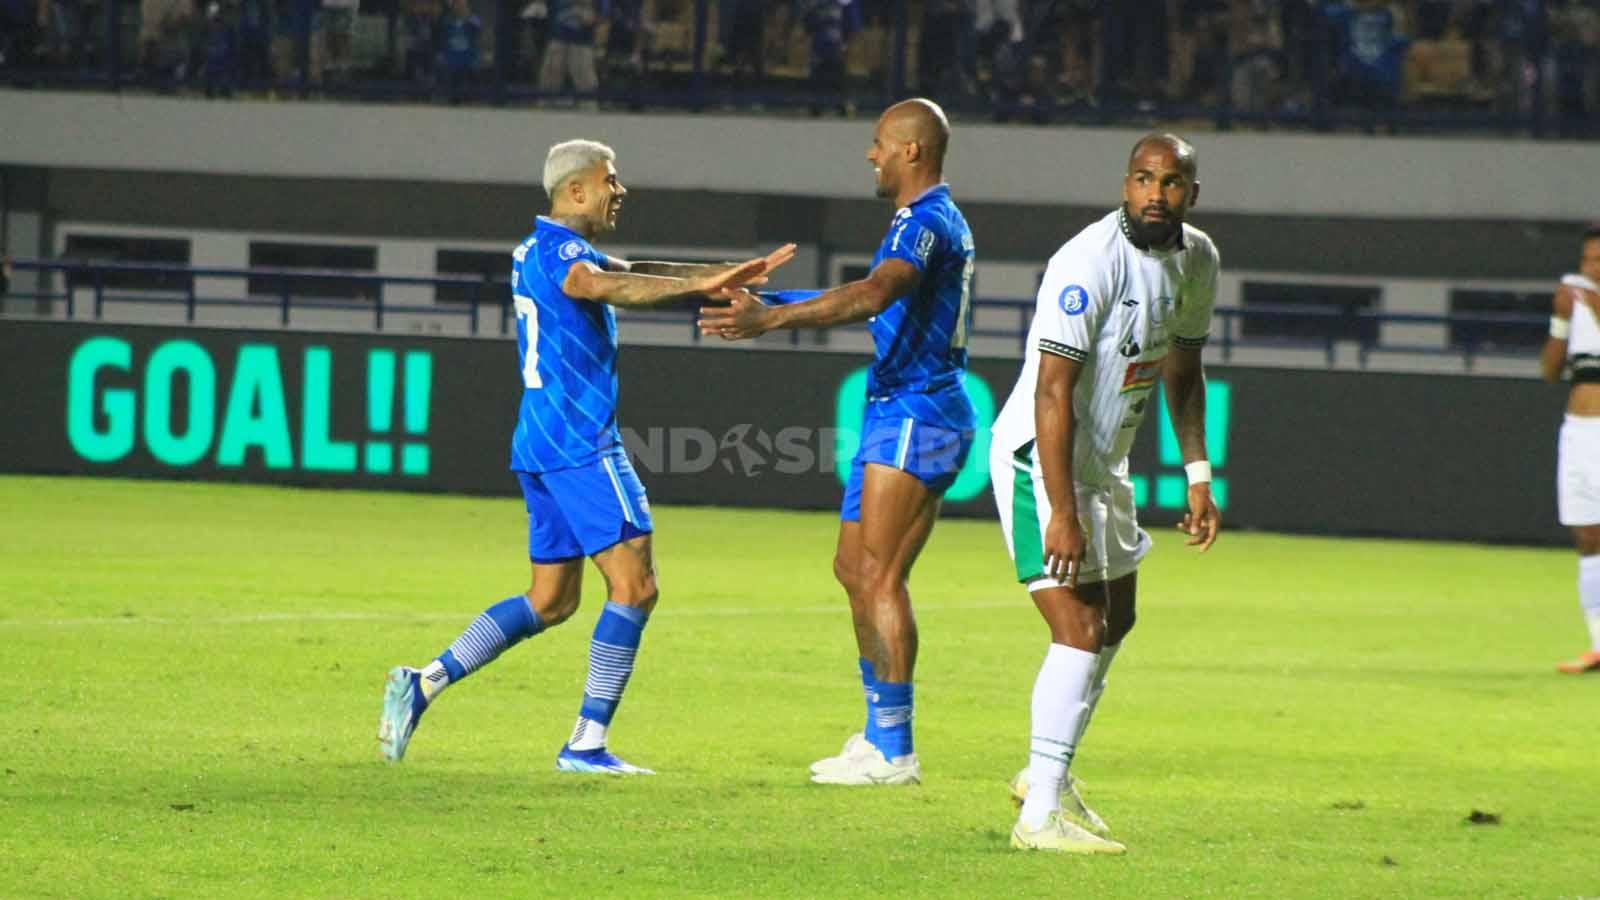 Striker Persib, David da Silva merayakan golnya ke gawang PSS, pada pertandingan pekan ke-17 kompetisi Liga 1 2023-2024 di Stadion GBLA, Kota Bandung, Sabtu (28/10/23).